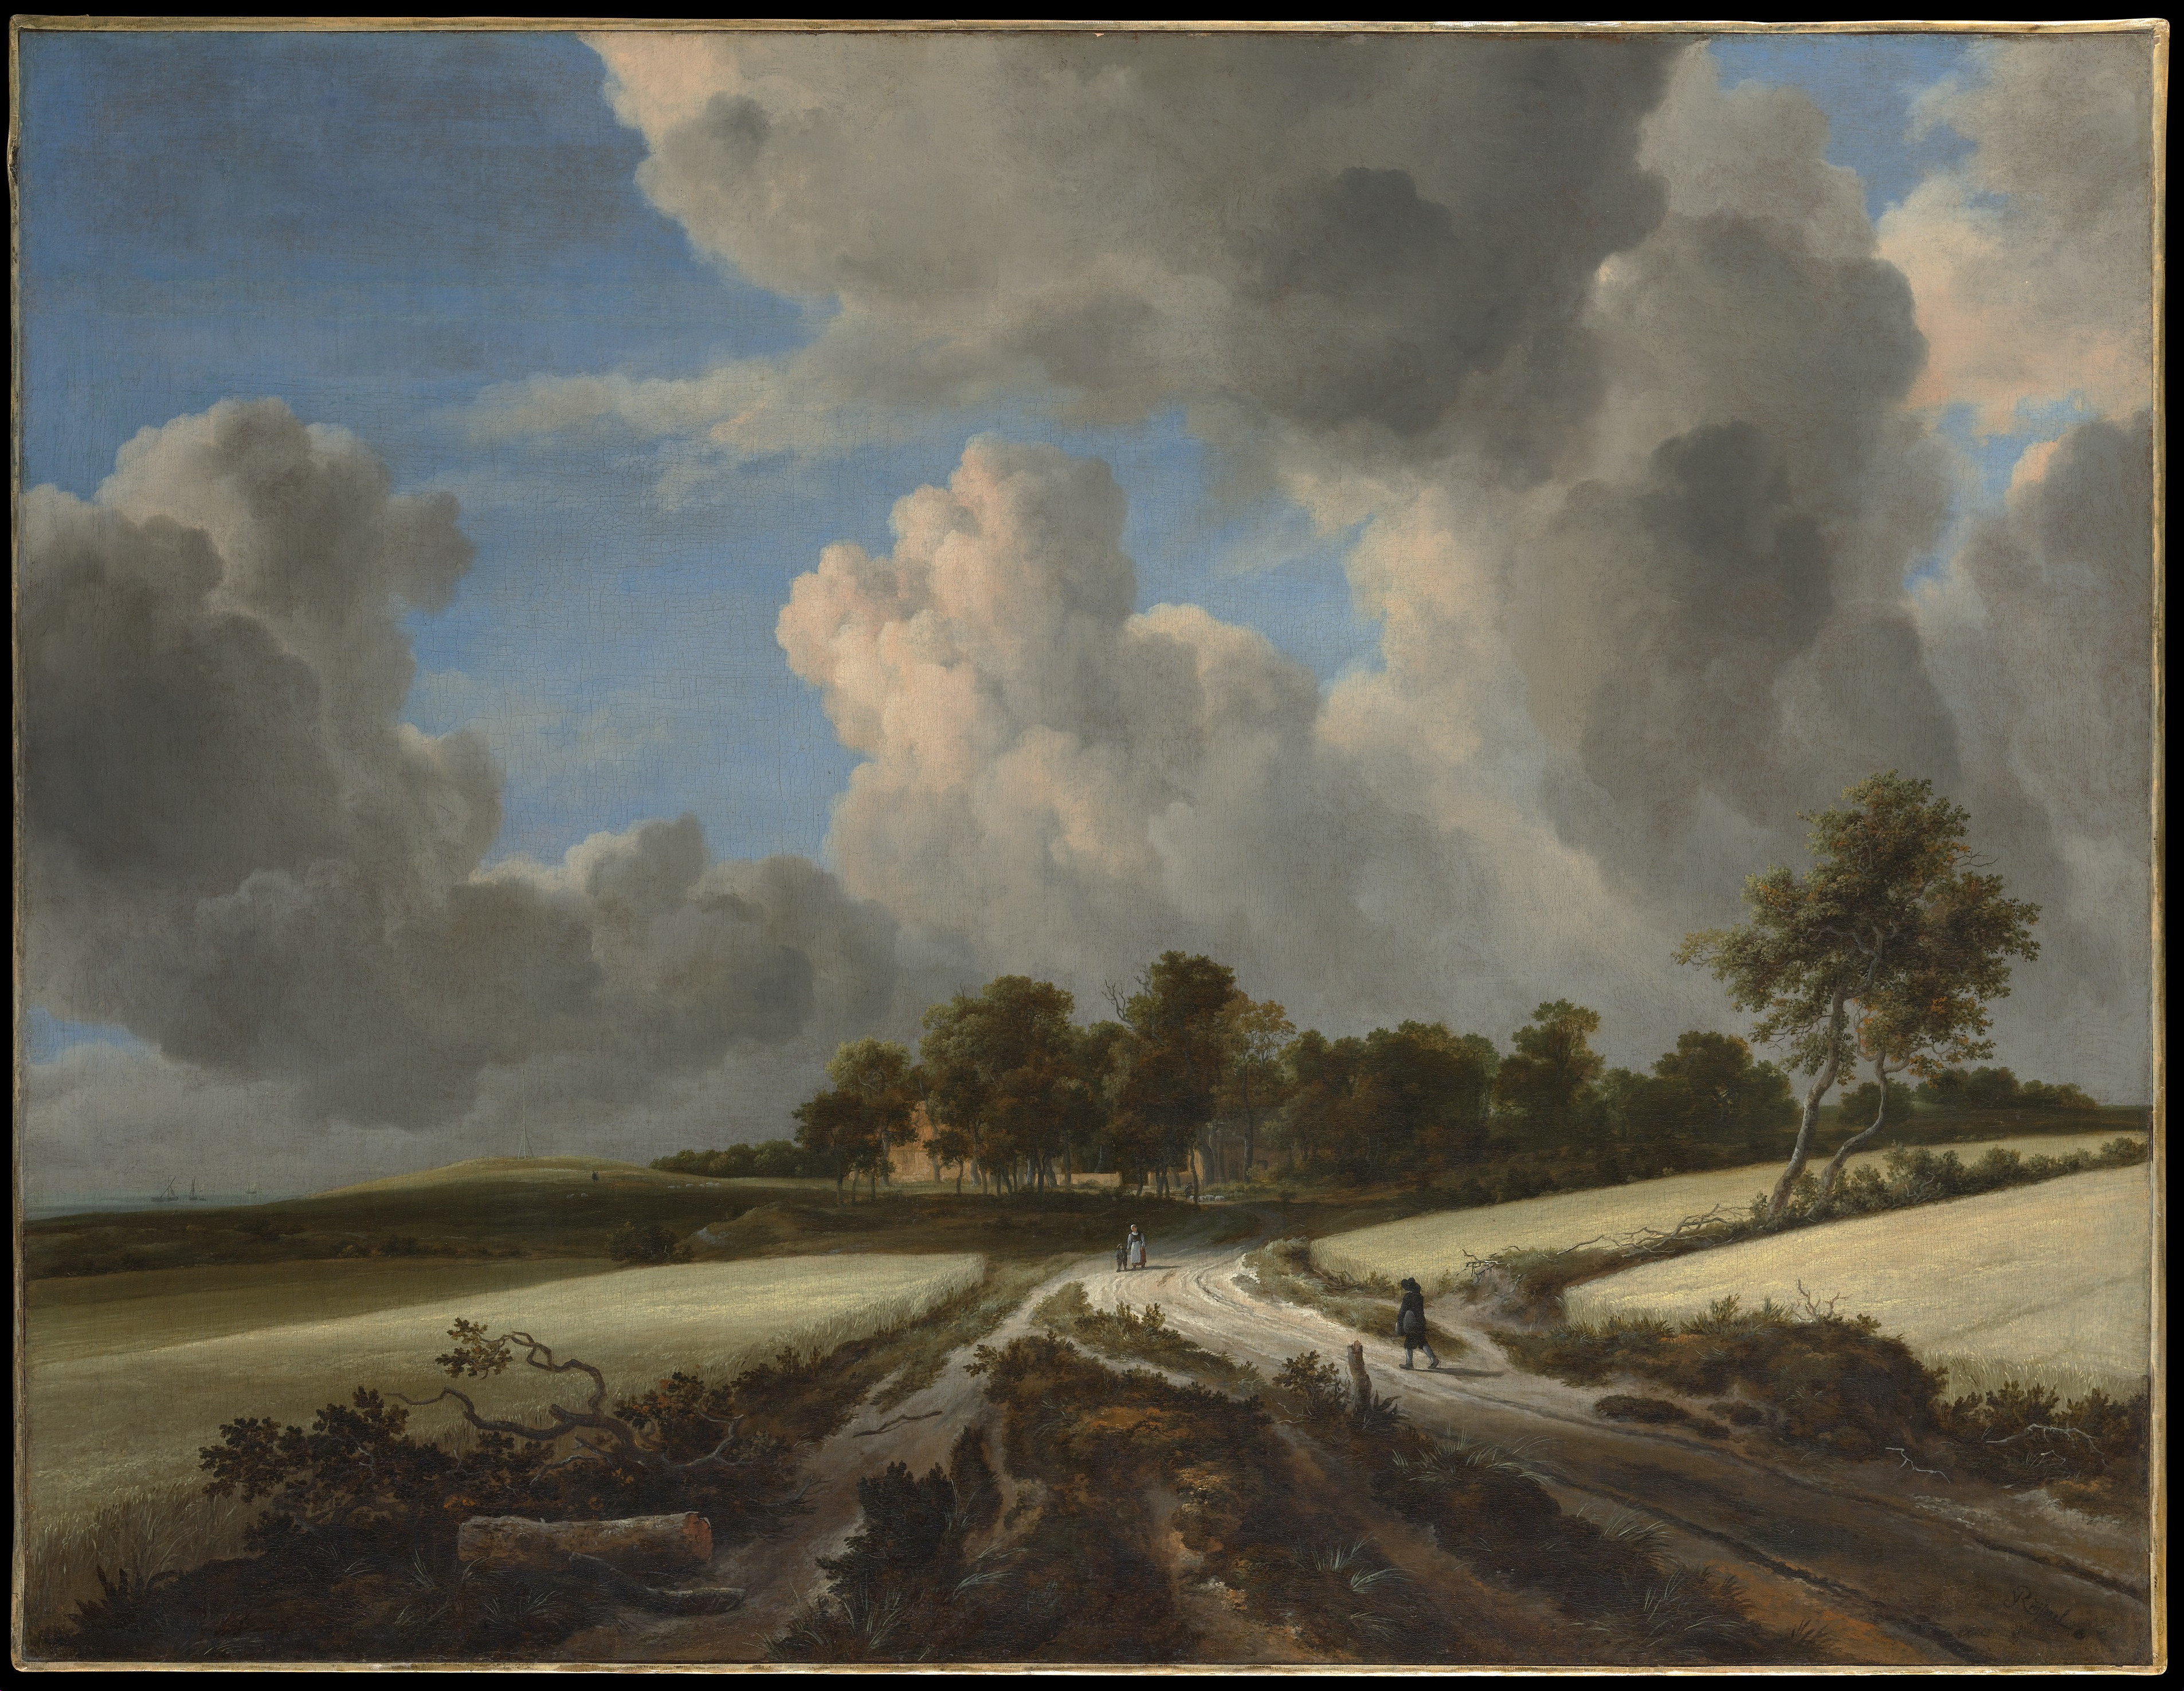 Camino atravesando campos de trigo cerca del Zuider Zee by Jacob van Ruisdael - ca. 1670 Museo Metropolitano de Arte